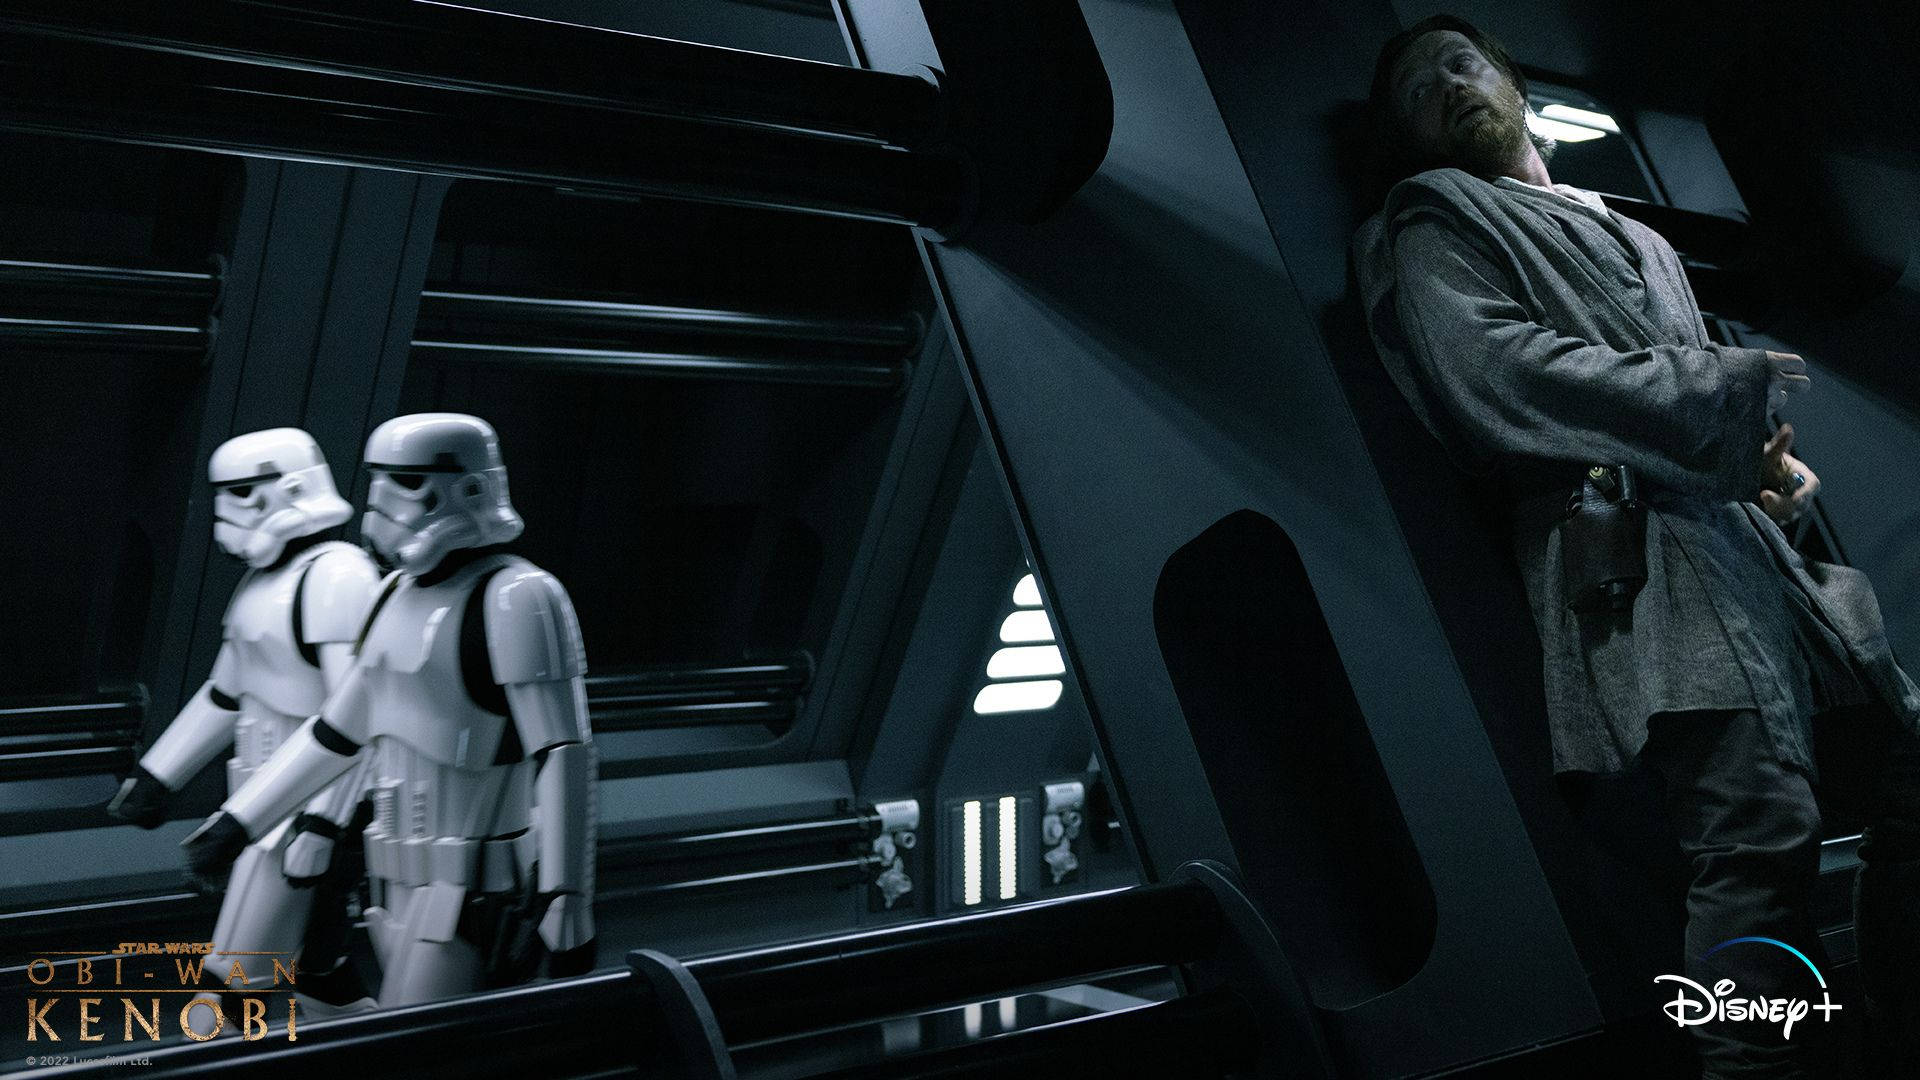 Obi-wan Kenobi Evades Stormtroopers In Hideout